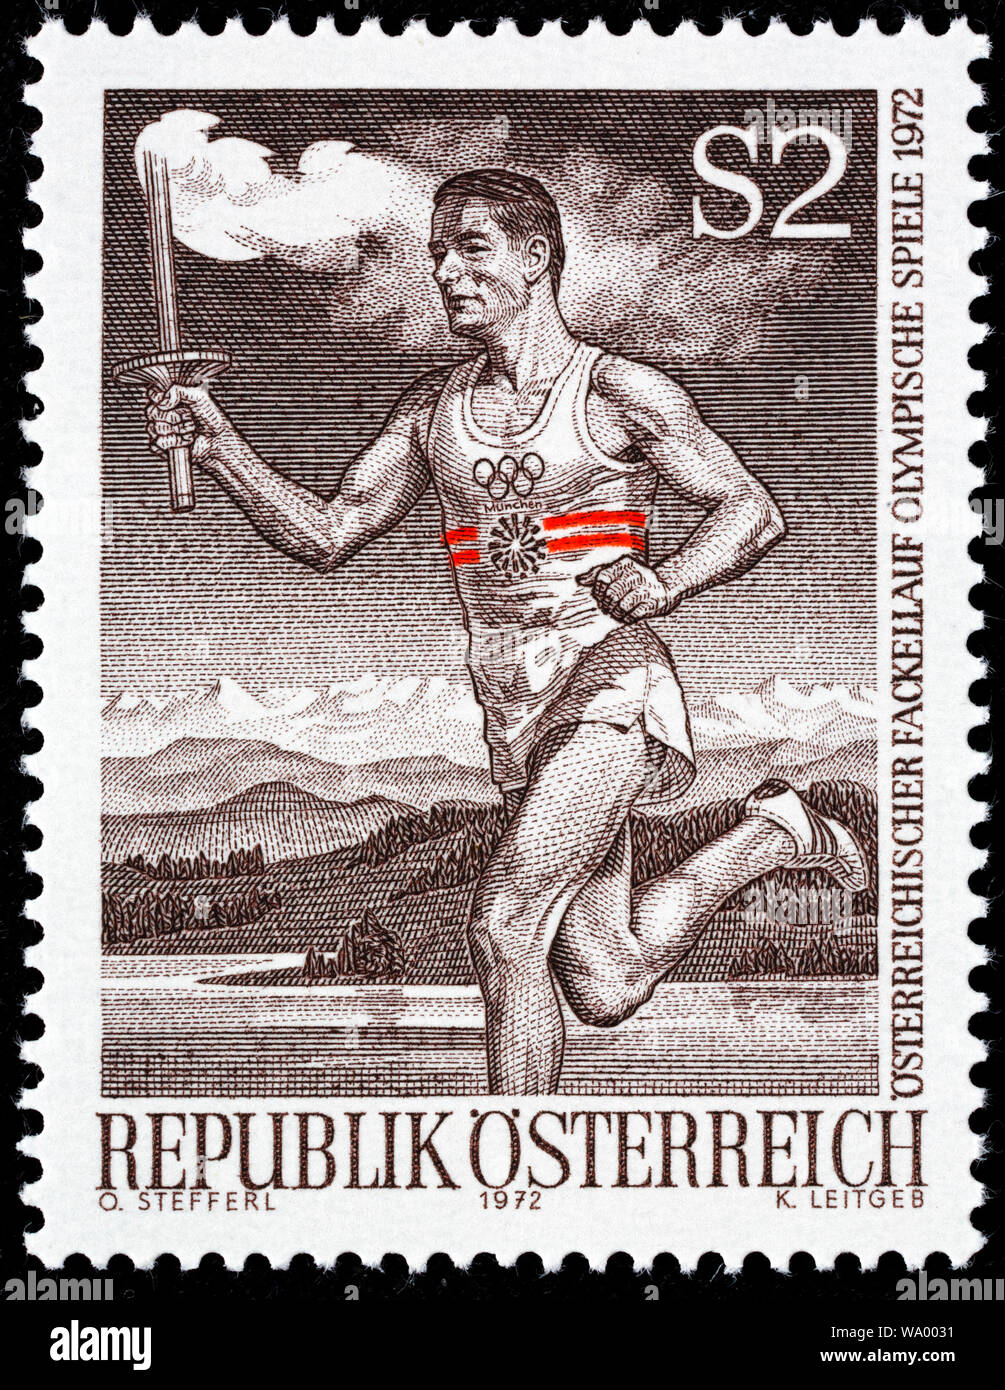 Relais de la flamme olympique, Jeux Olympiques, timbre-poste, l'Autriche, 1972 Banque D'Images